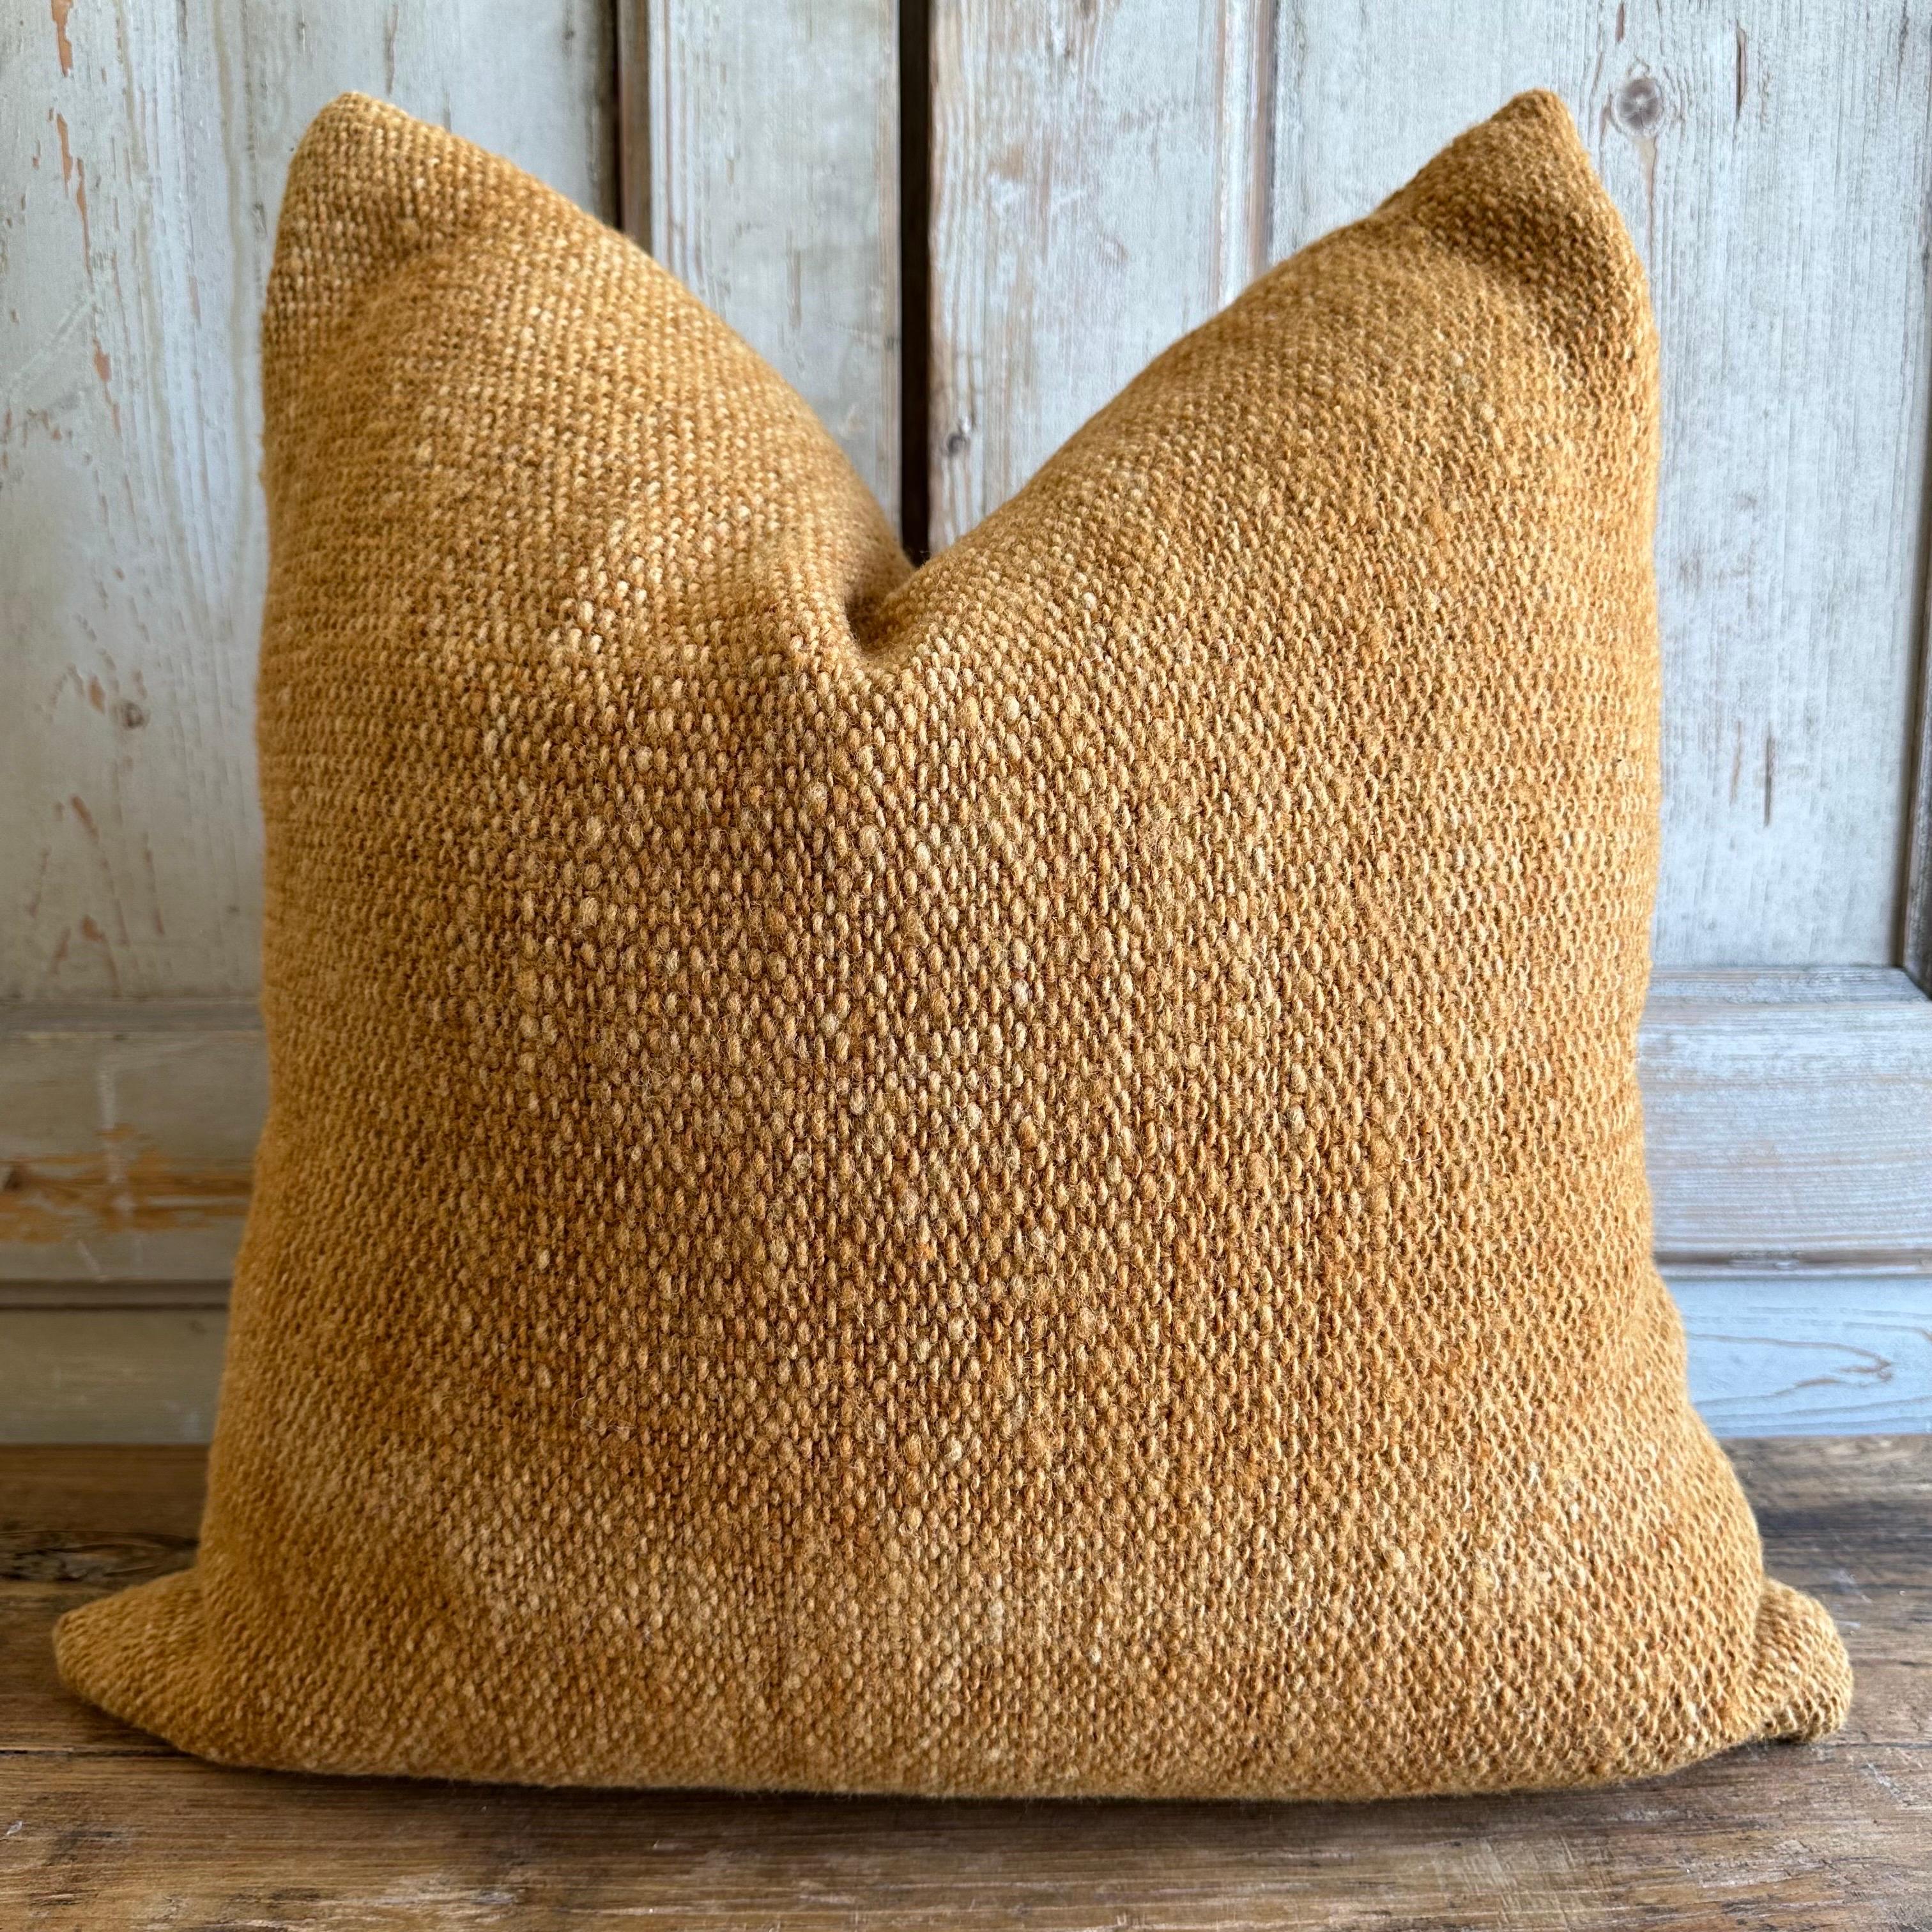 Custom made Alpaca / wool woven pillow
Size: 23